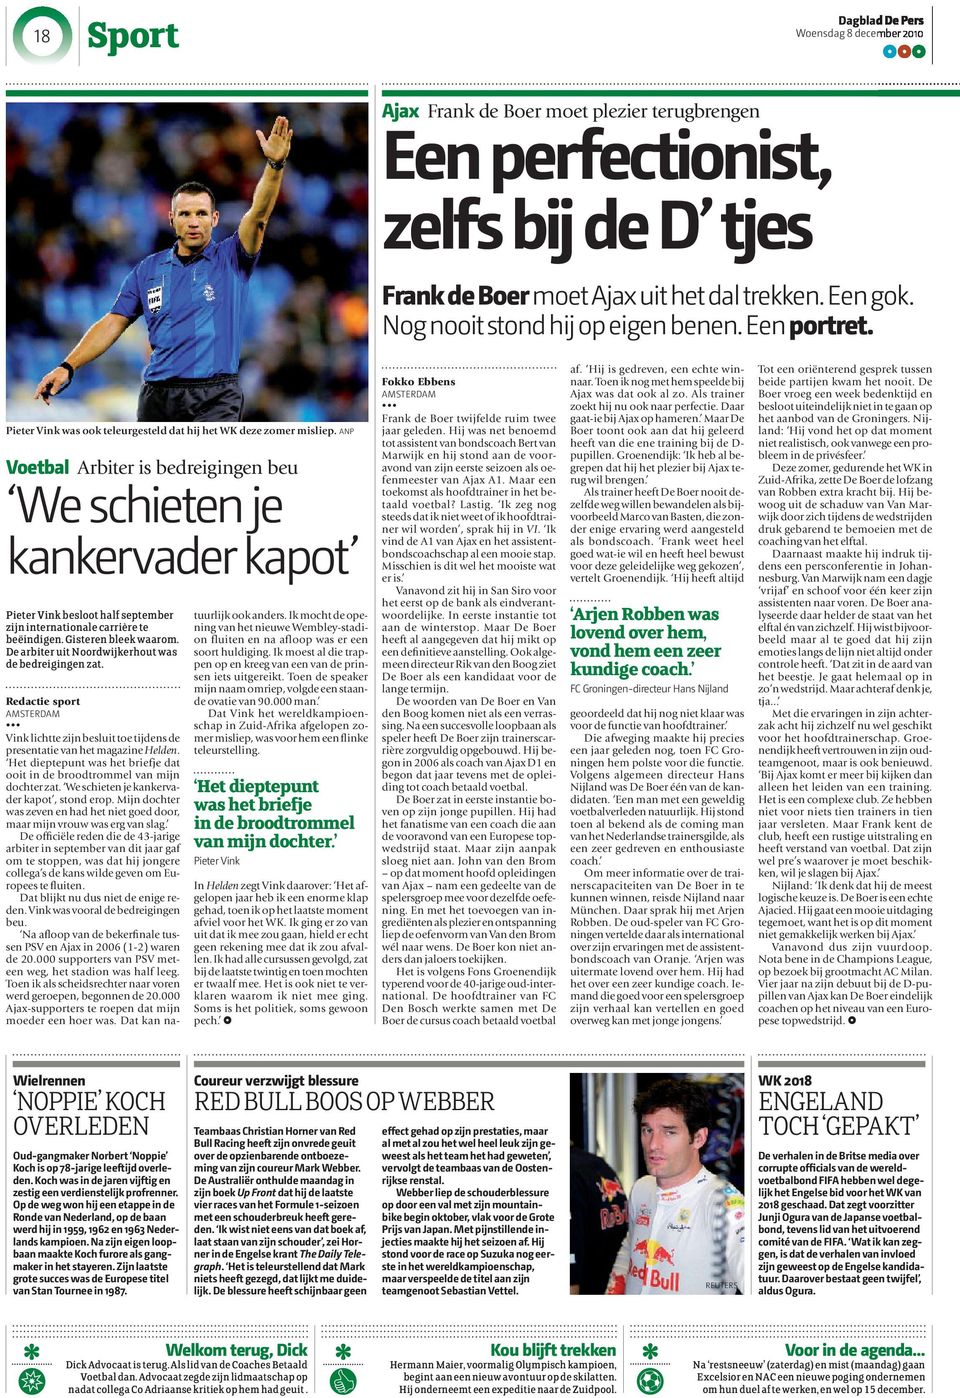 ANP Voetbal Arbiter is bedreigingen beu We schieten je kankervader kapot Pieter Vink besloot half september zijn internationale carrière te beëindigen. Gisteren bleek waarom.